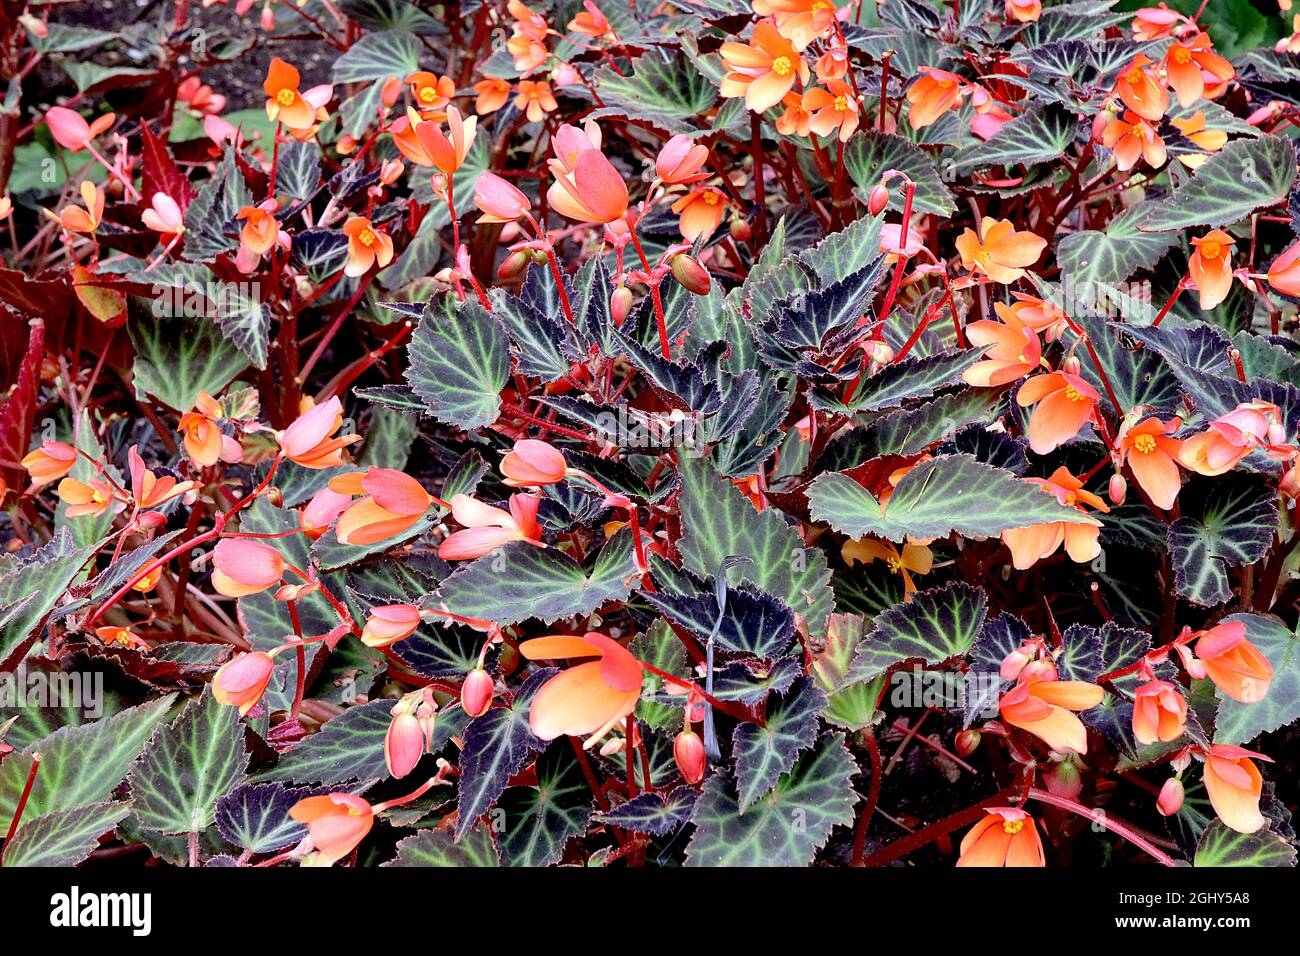 Begonia boliviensis ‘Sparks will Fly’ einzelne rot-orangefarbene Blüten mit hellorangenen Innenräumen und violetten Bronzeblättern, August, England, Großbritannien Stockfoto